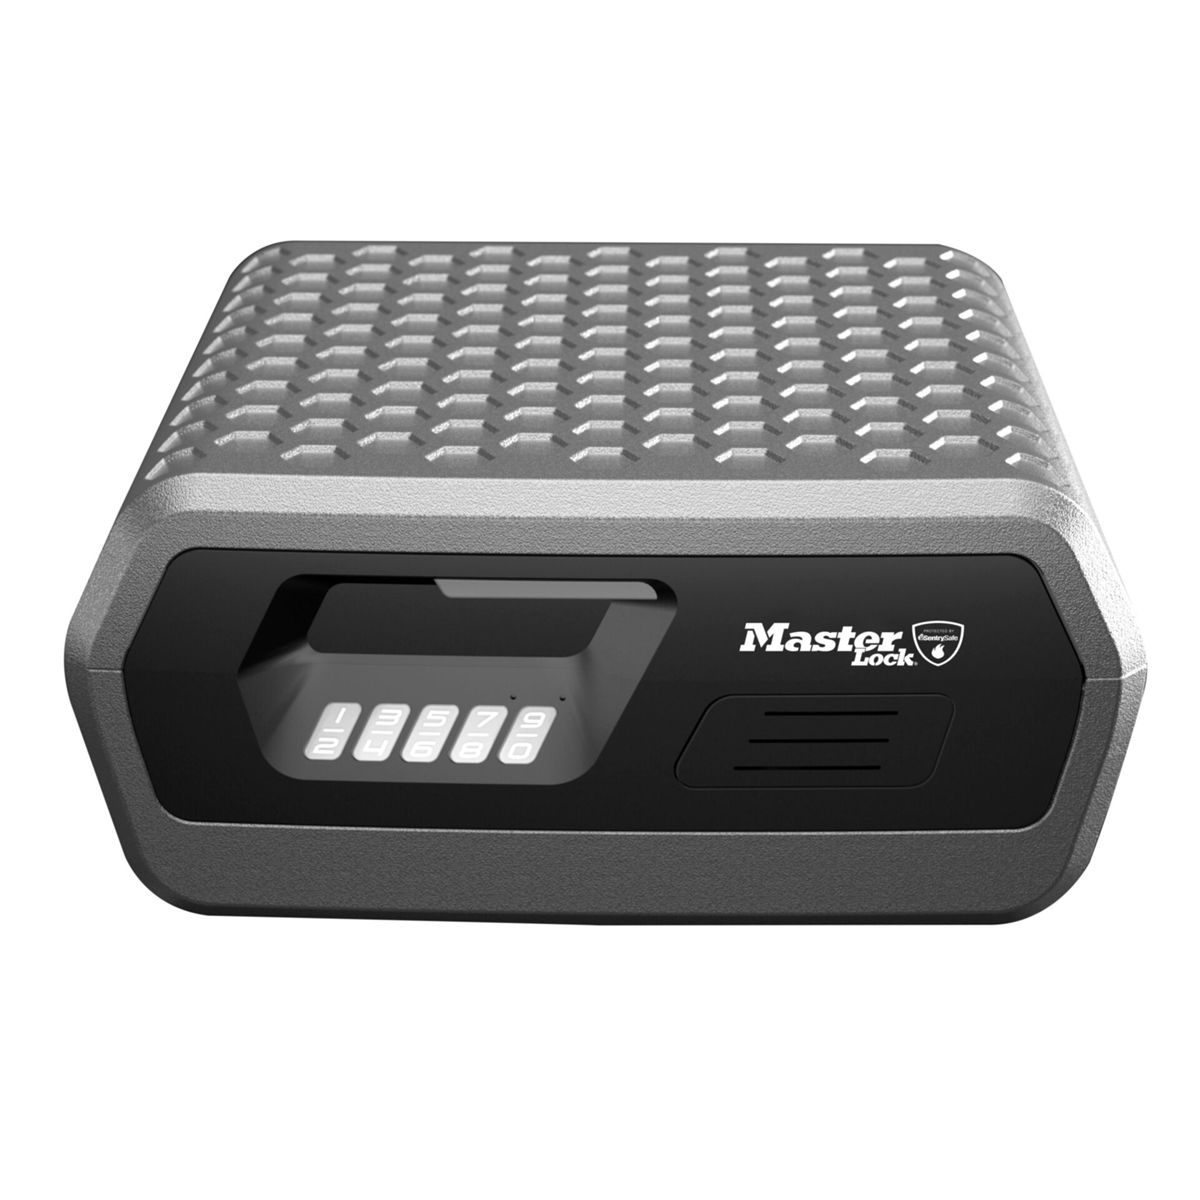 MASTERLOCK Master Lock Sicherheitskassette Sicherheitskassette anthrazit CHW30300EURHRO digital